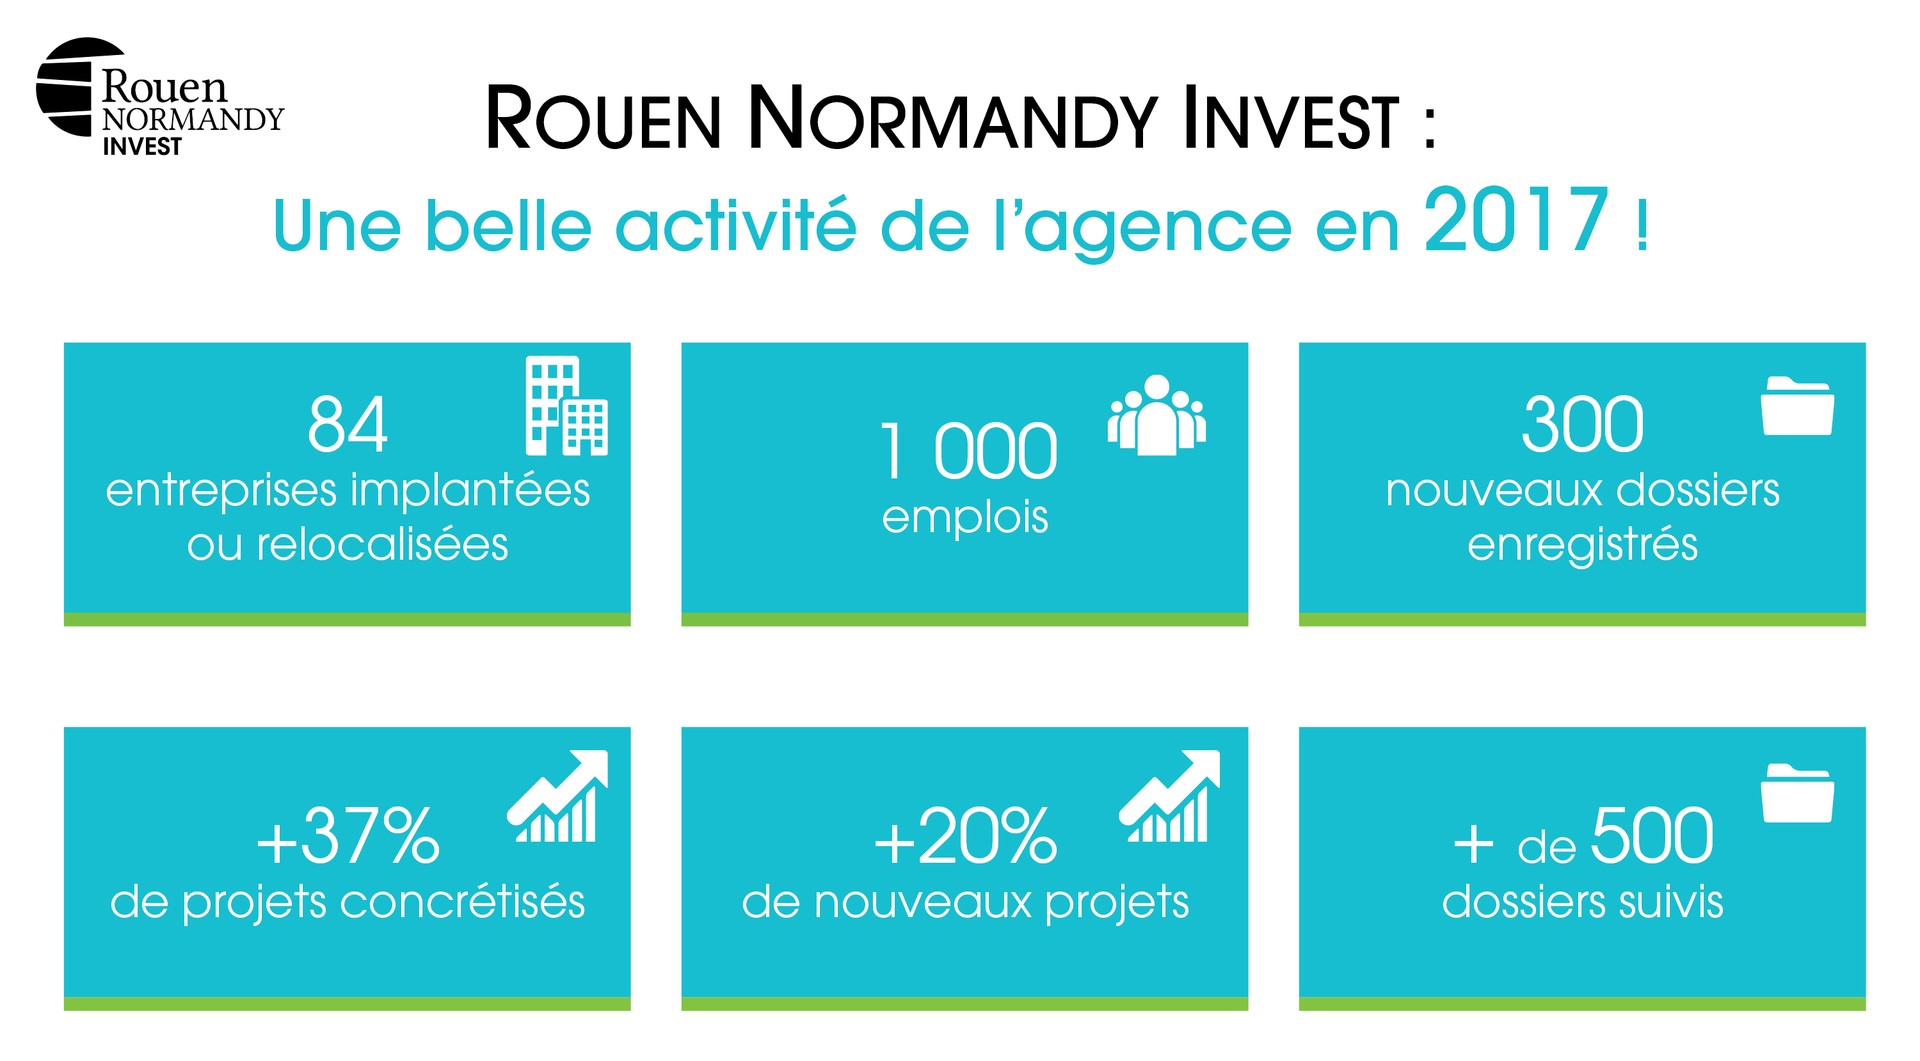 Rouen Normandy Invest : une belle activité en 2017 !